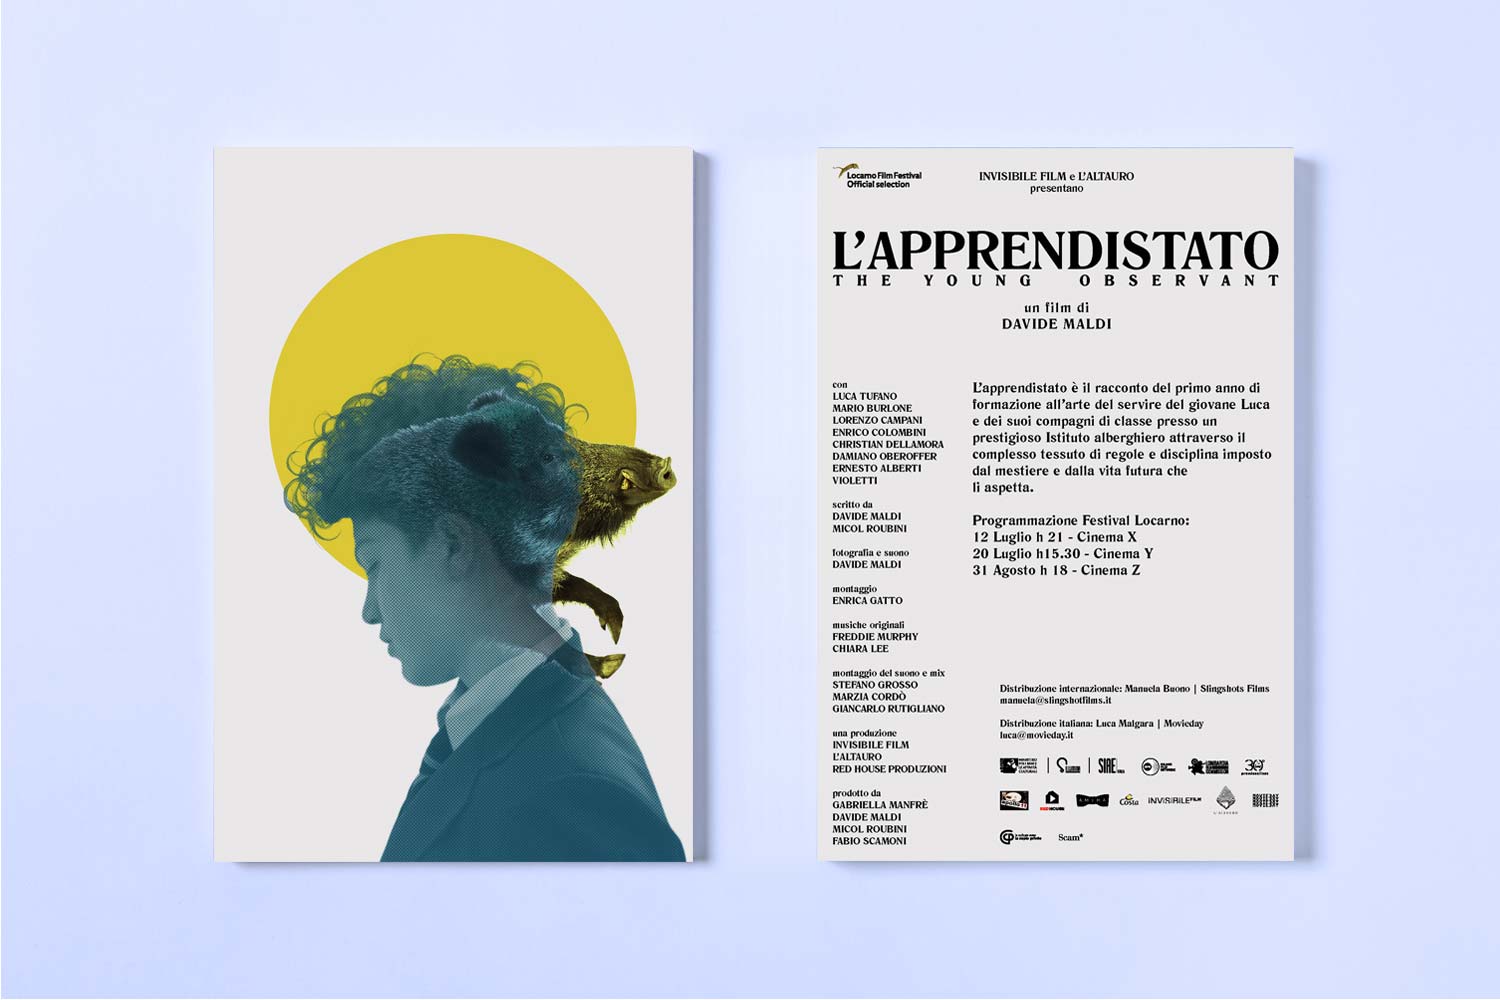 Postcard of L'Apprendistato by Davide Maldi